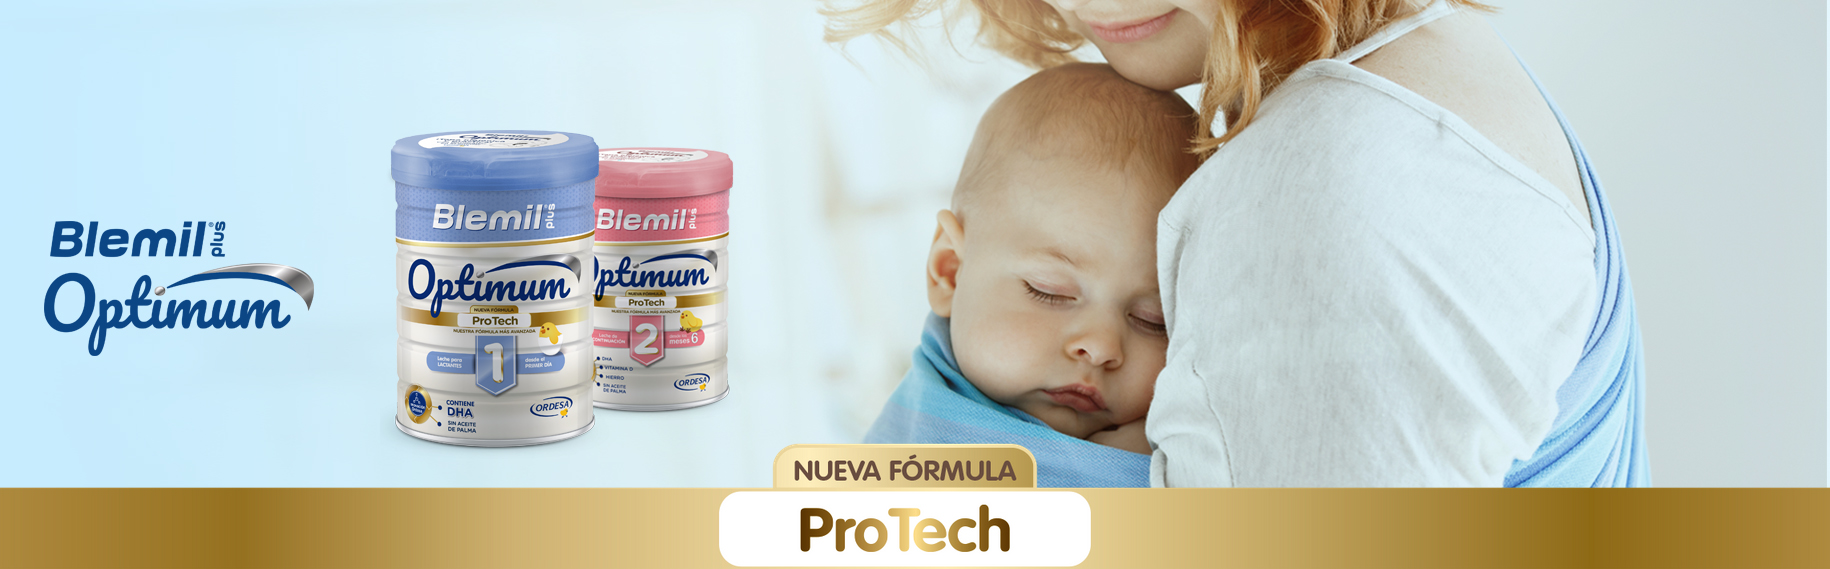 BLEMIL Optimum ProTech Infant Milk